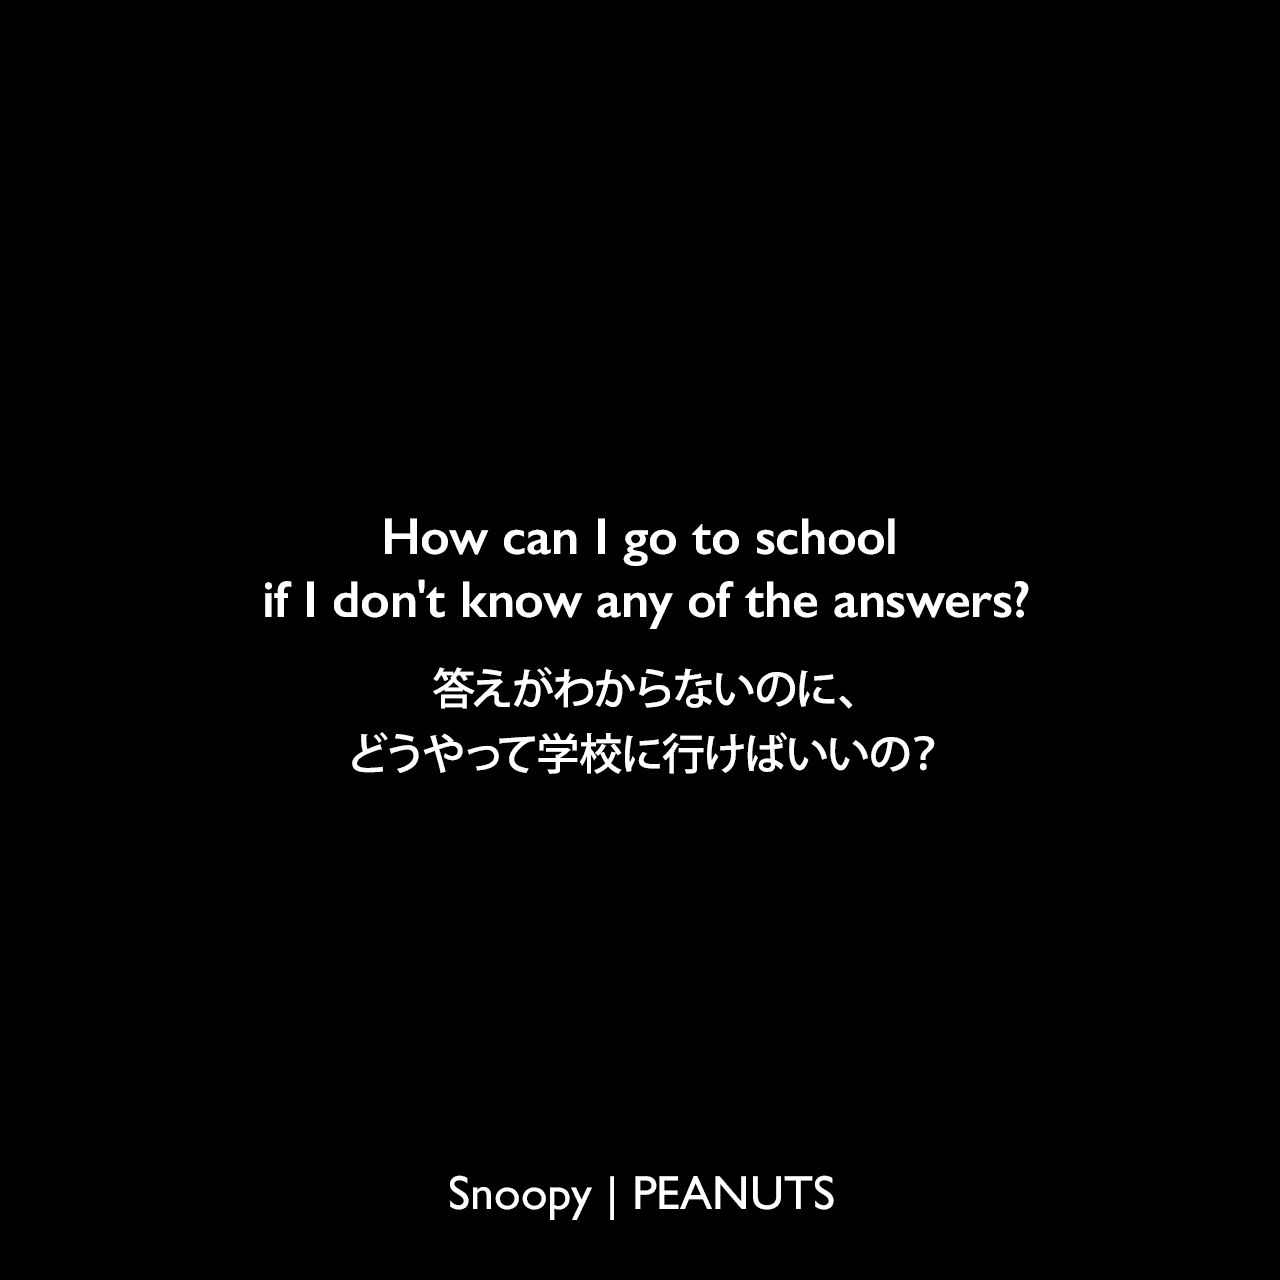 How can I go to school if I don't know any of the answers?答えがわからないのに、どうやって学校に行けばいいの？- サリー (1974年9月8日のコミック)Charles Monroe Schulz